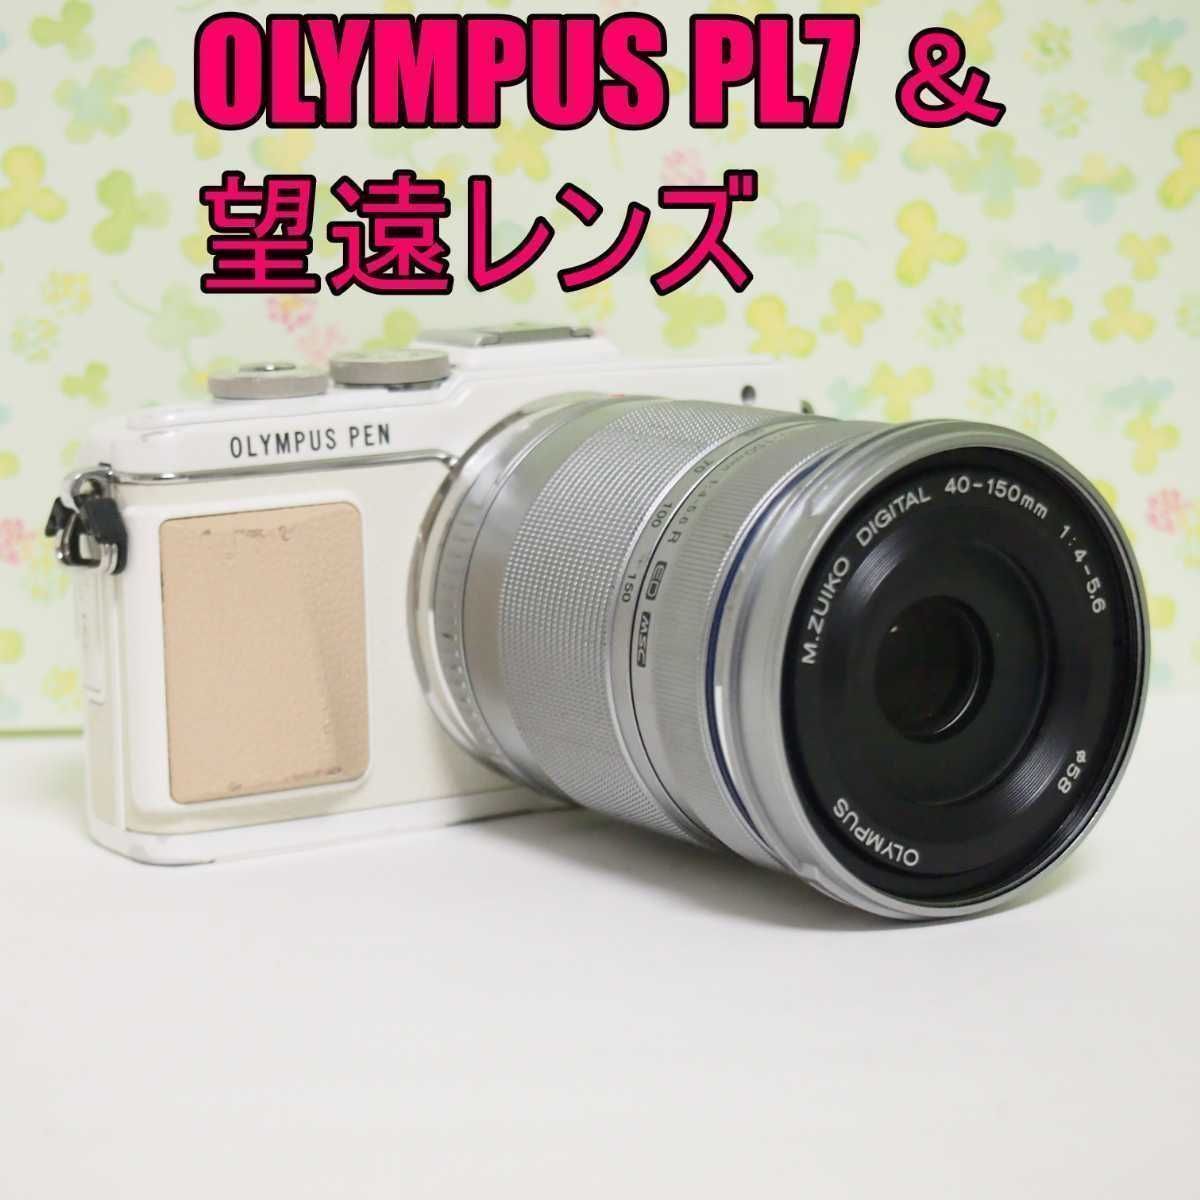 【OLYMPUS ミラーレスカメラ】PL7☆送料無料オリンパス